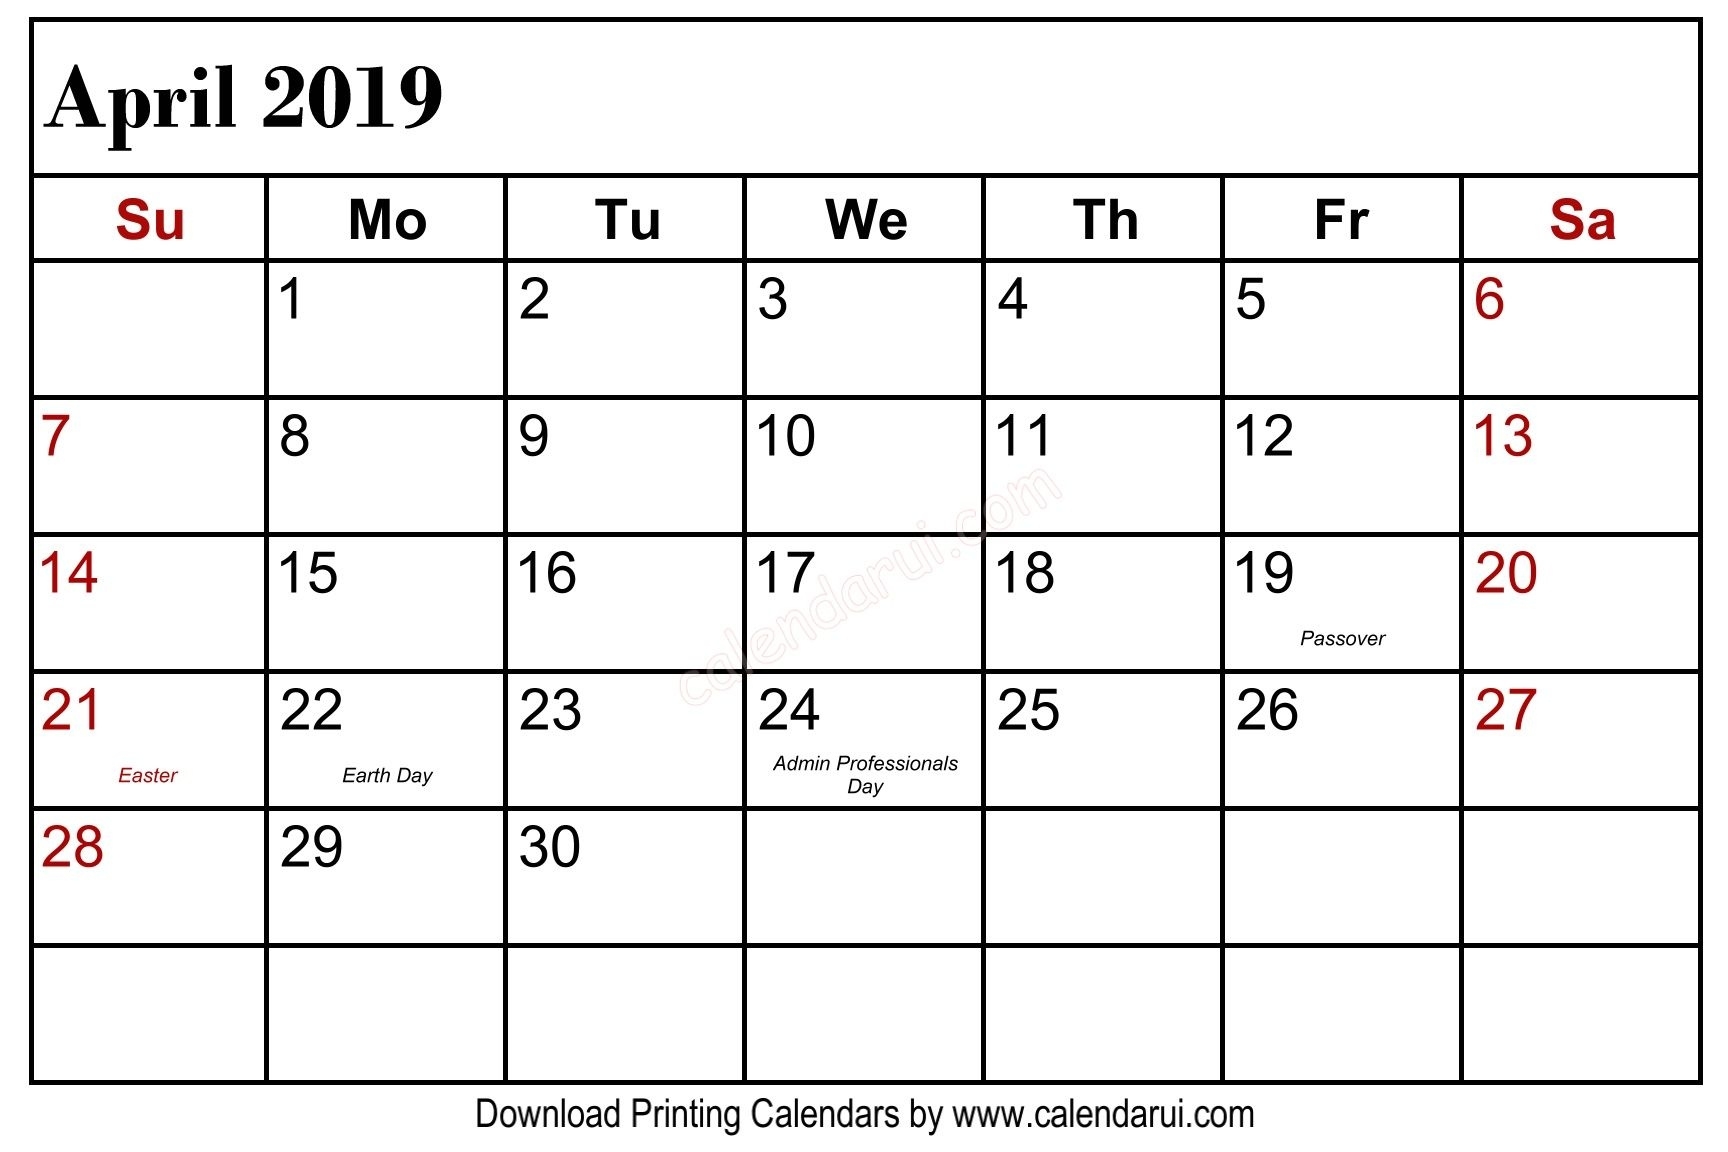 April 2019 Calendar Holidays Usa Public Holidays 1 | Blank Blank 2020 Calendar With Holidays Usa